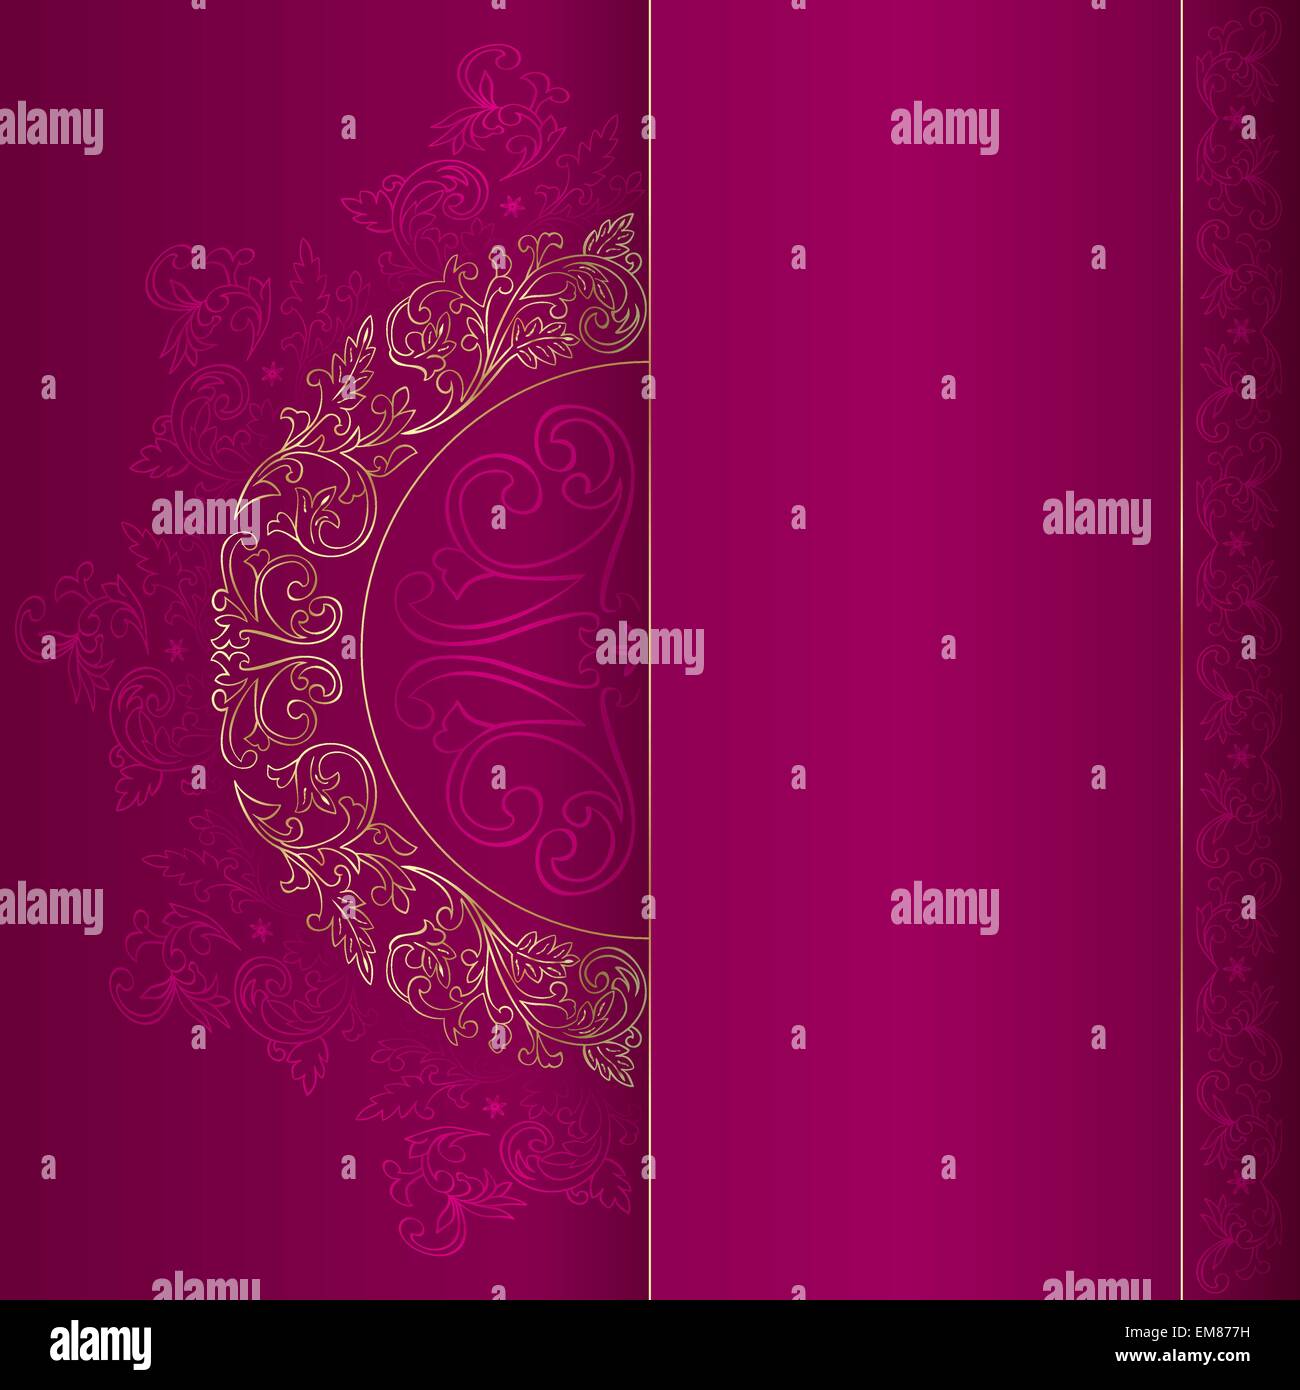 Gold vintage floral patterns on pink background Stock Vector